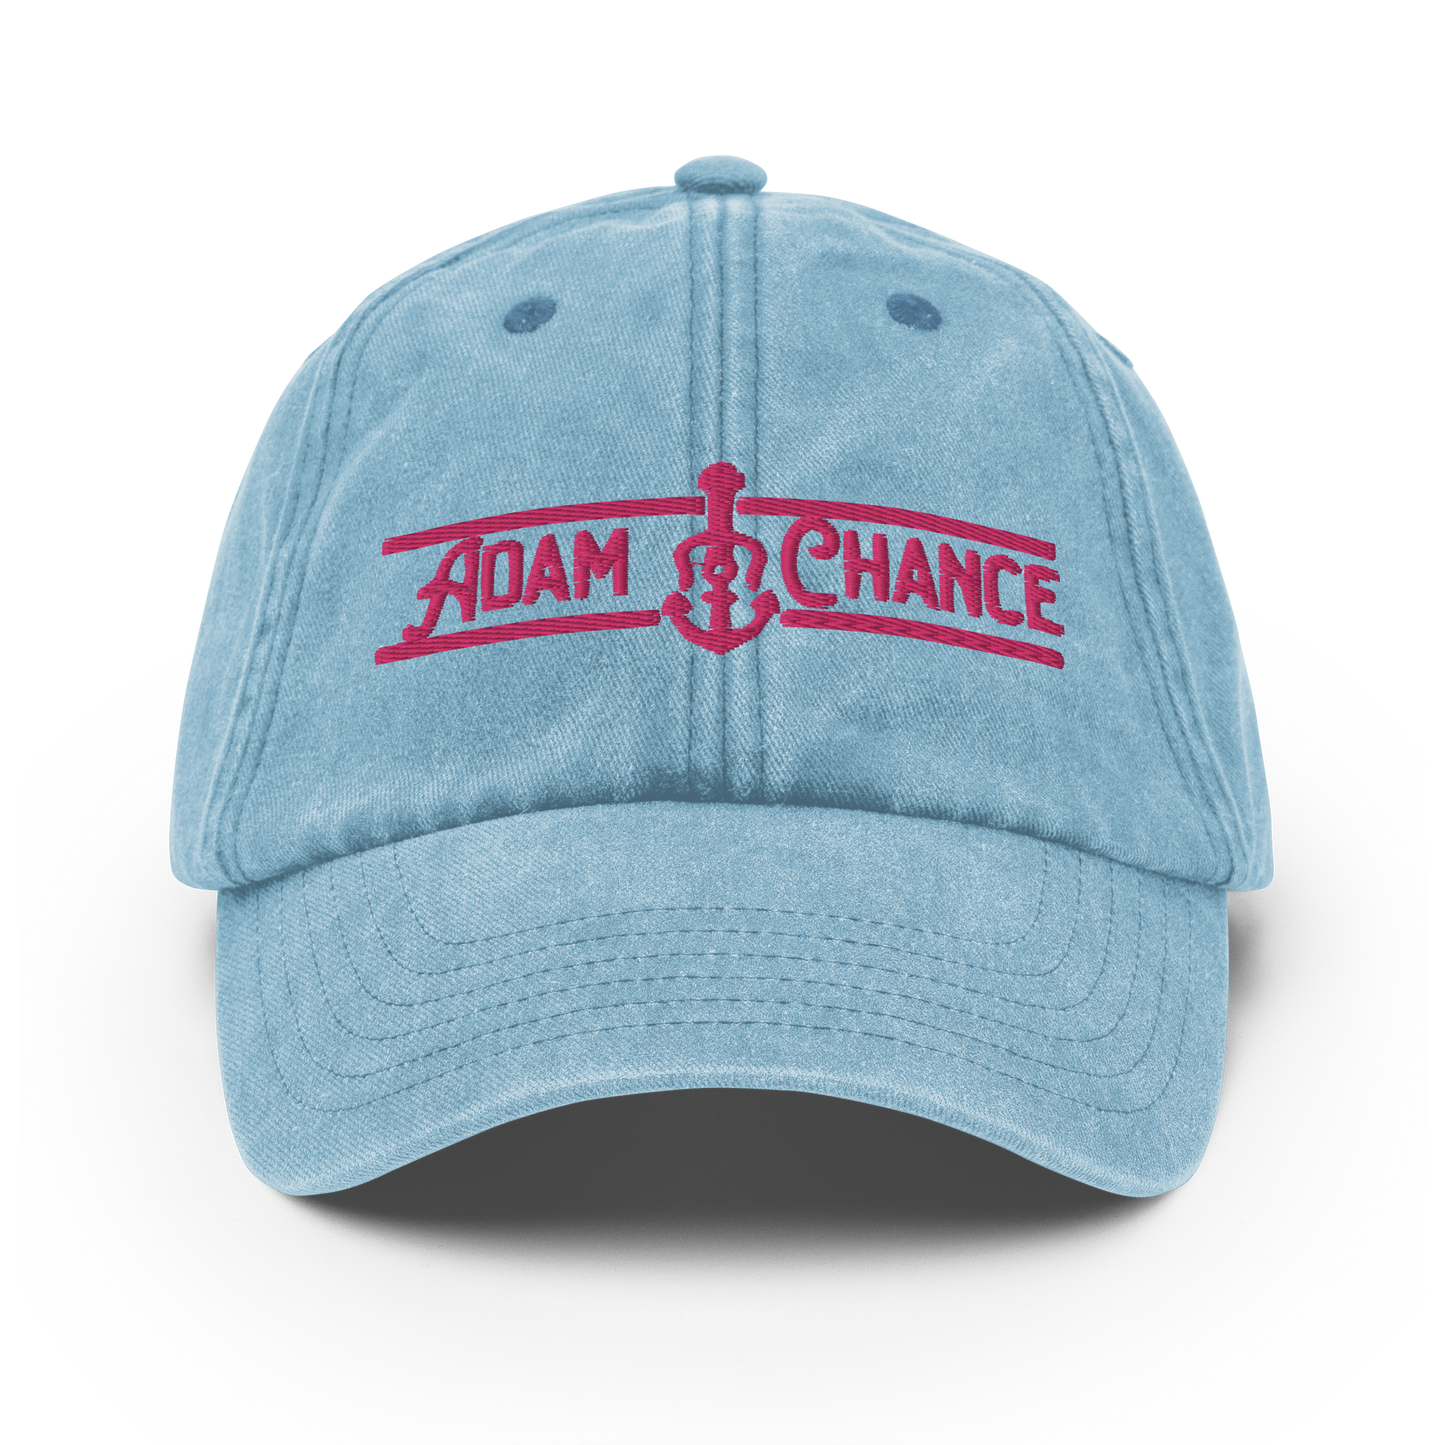 Adam Chance Dad Cap